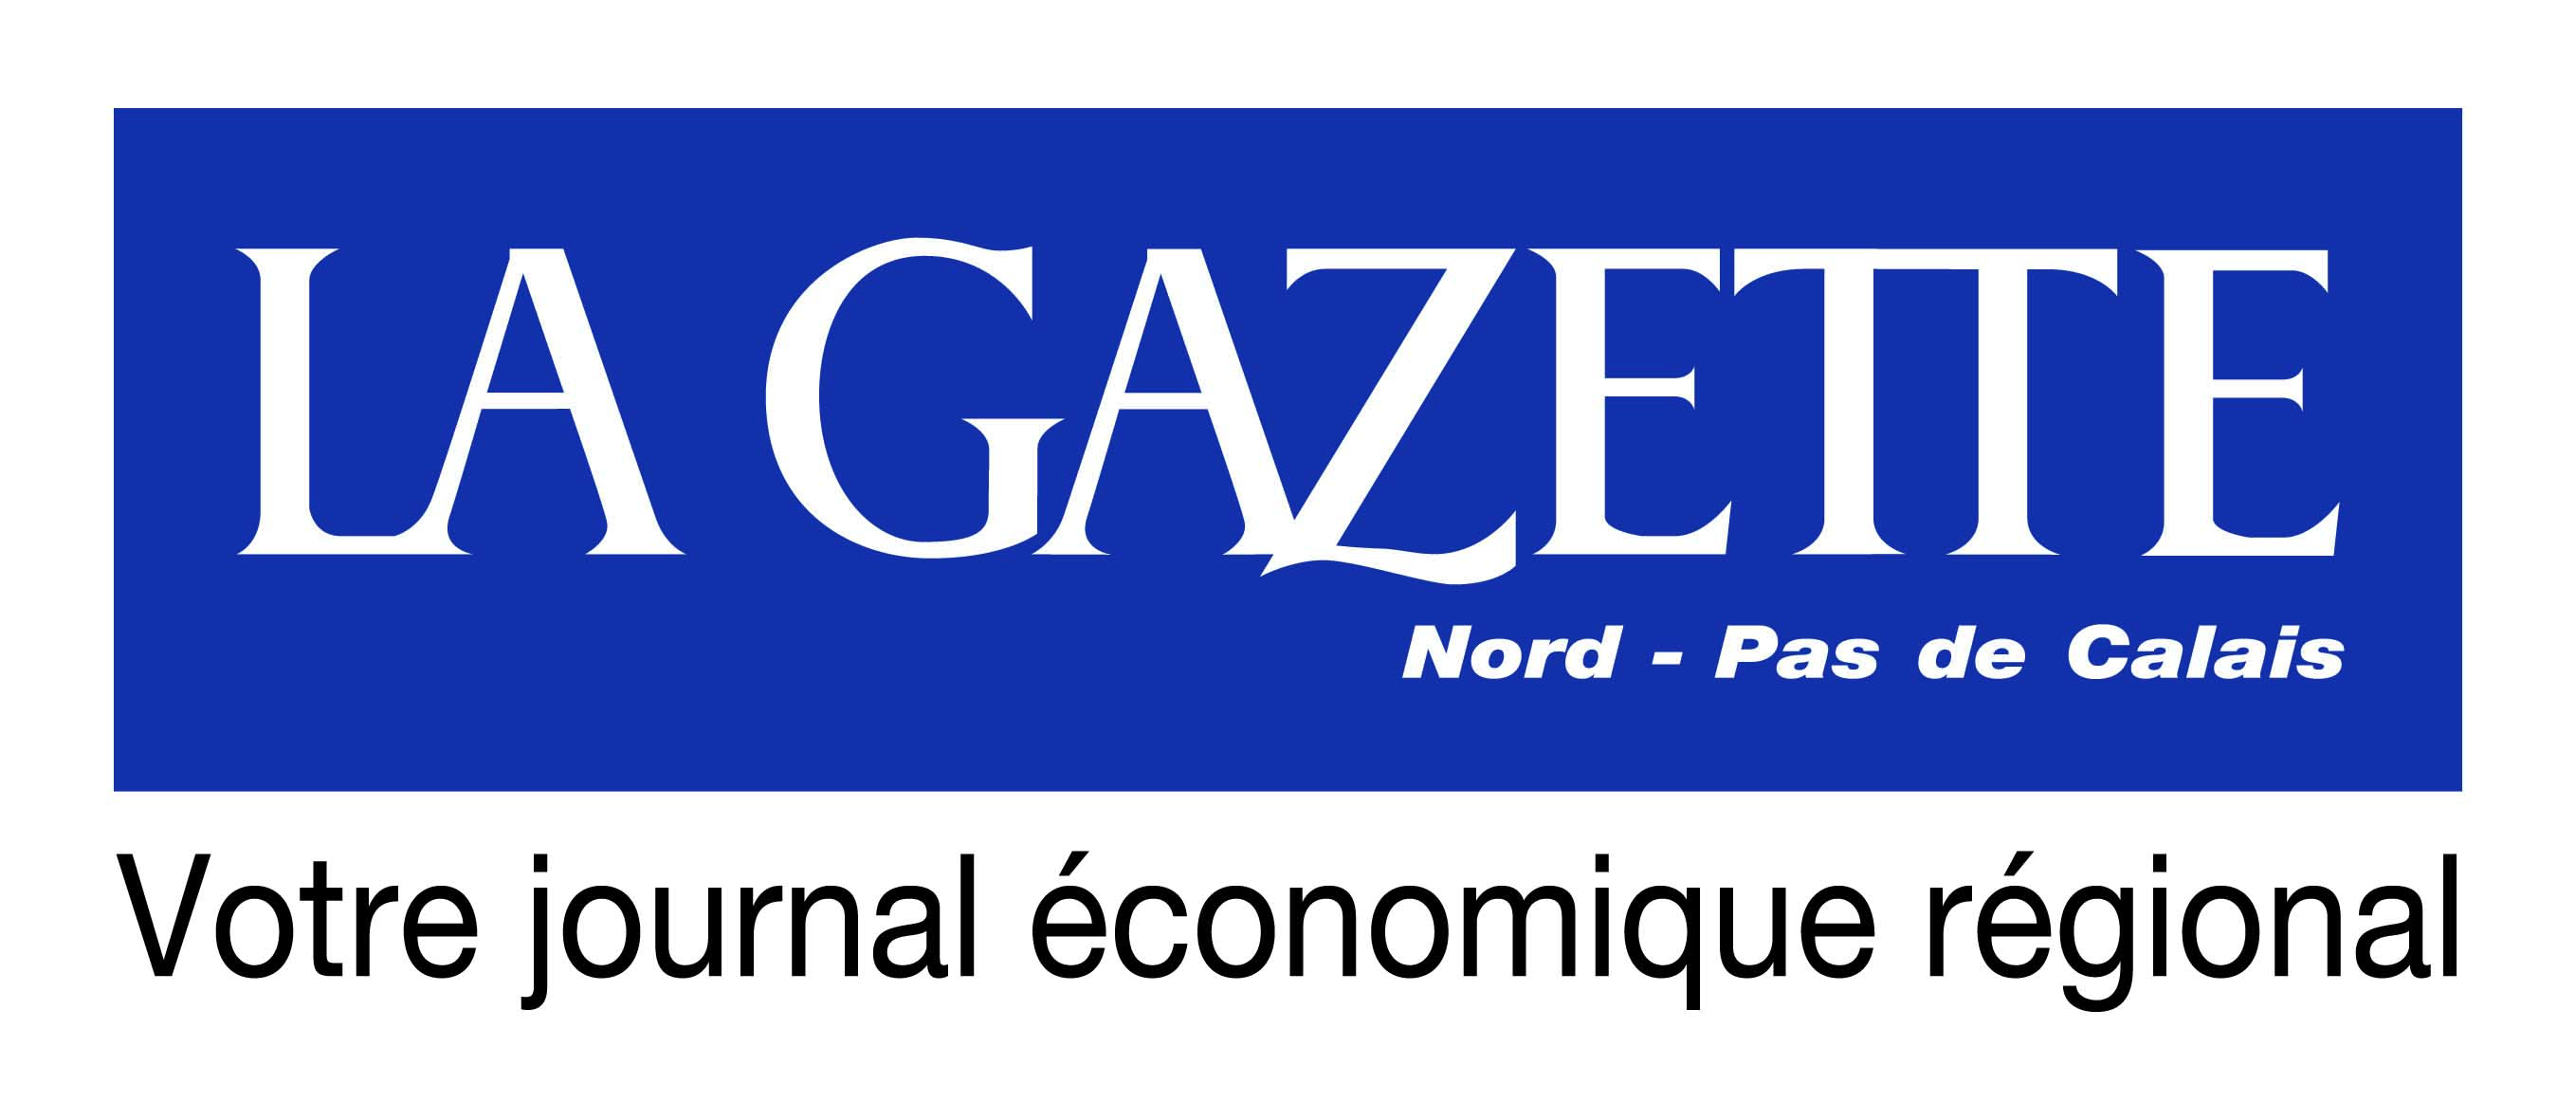 Bienvenue à La Gazette Nord - Pas de Calais - Partenaire 2023 des salons ENVIROpro